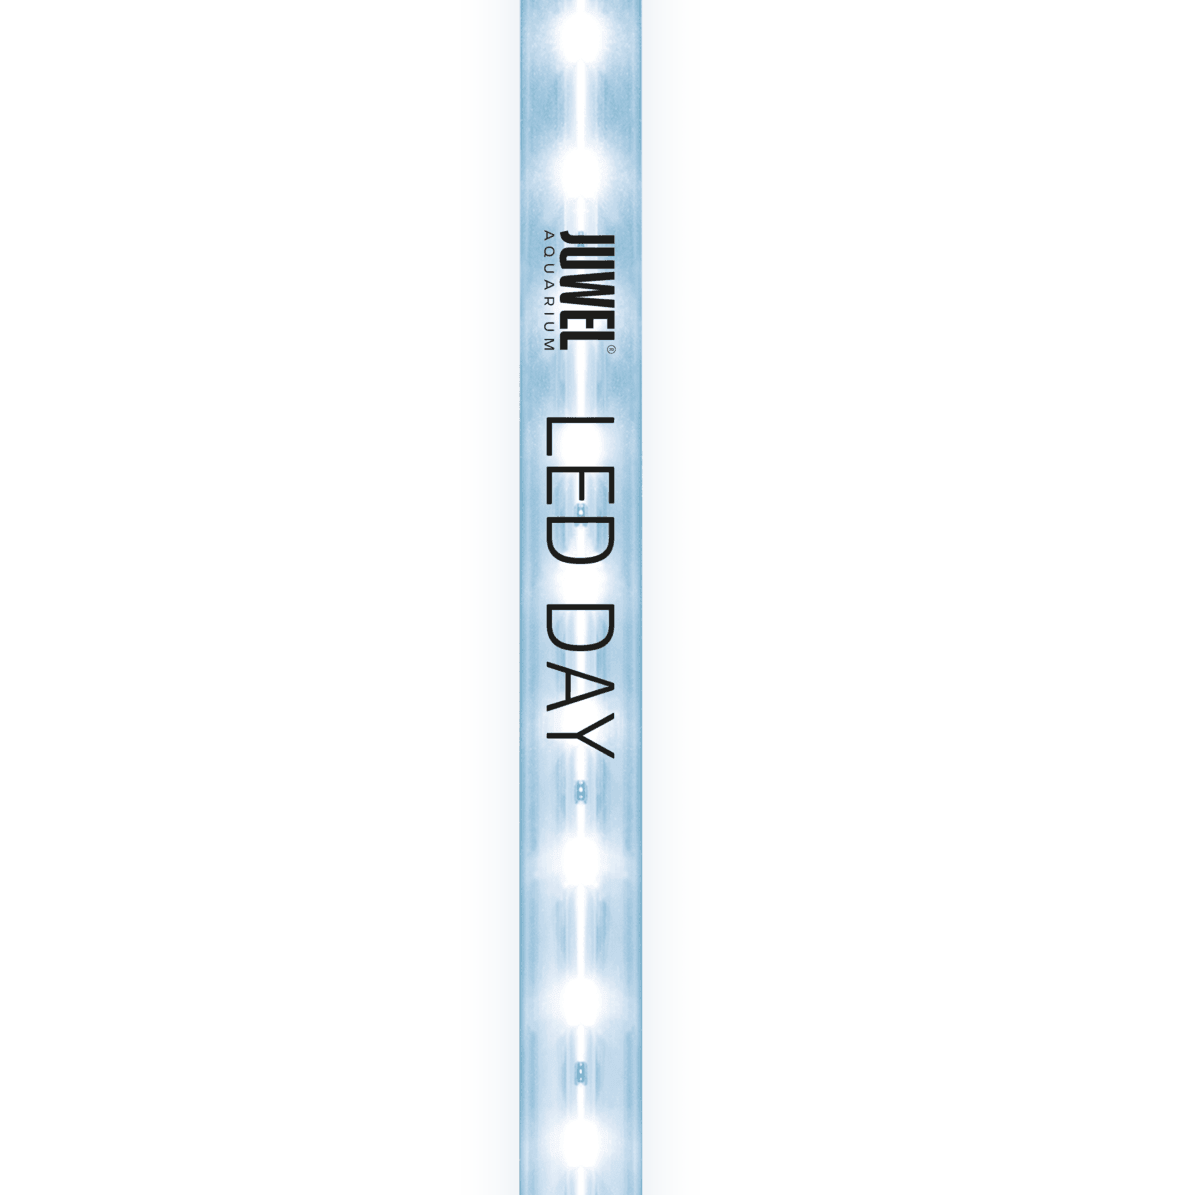 Juwel LED Day Light Tube - Amazing Amazon